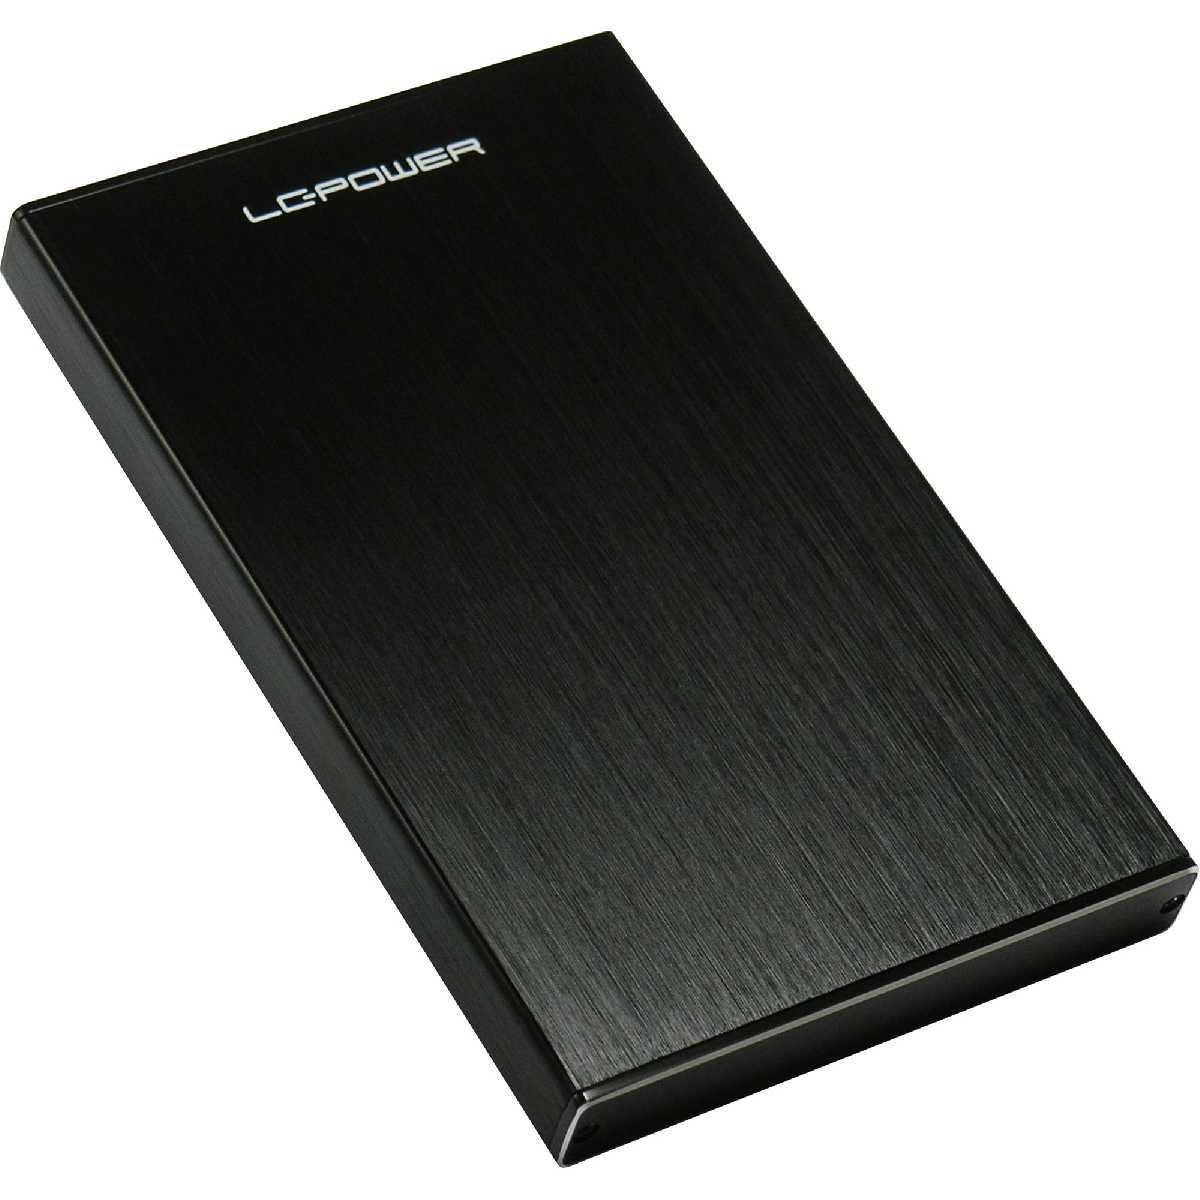 LC-Power Speichergehäuse LC-25U3-Becrux - 2.5\" SATA HDDs/SSDs - USB 3.0